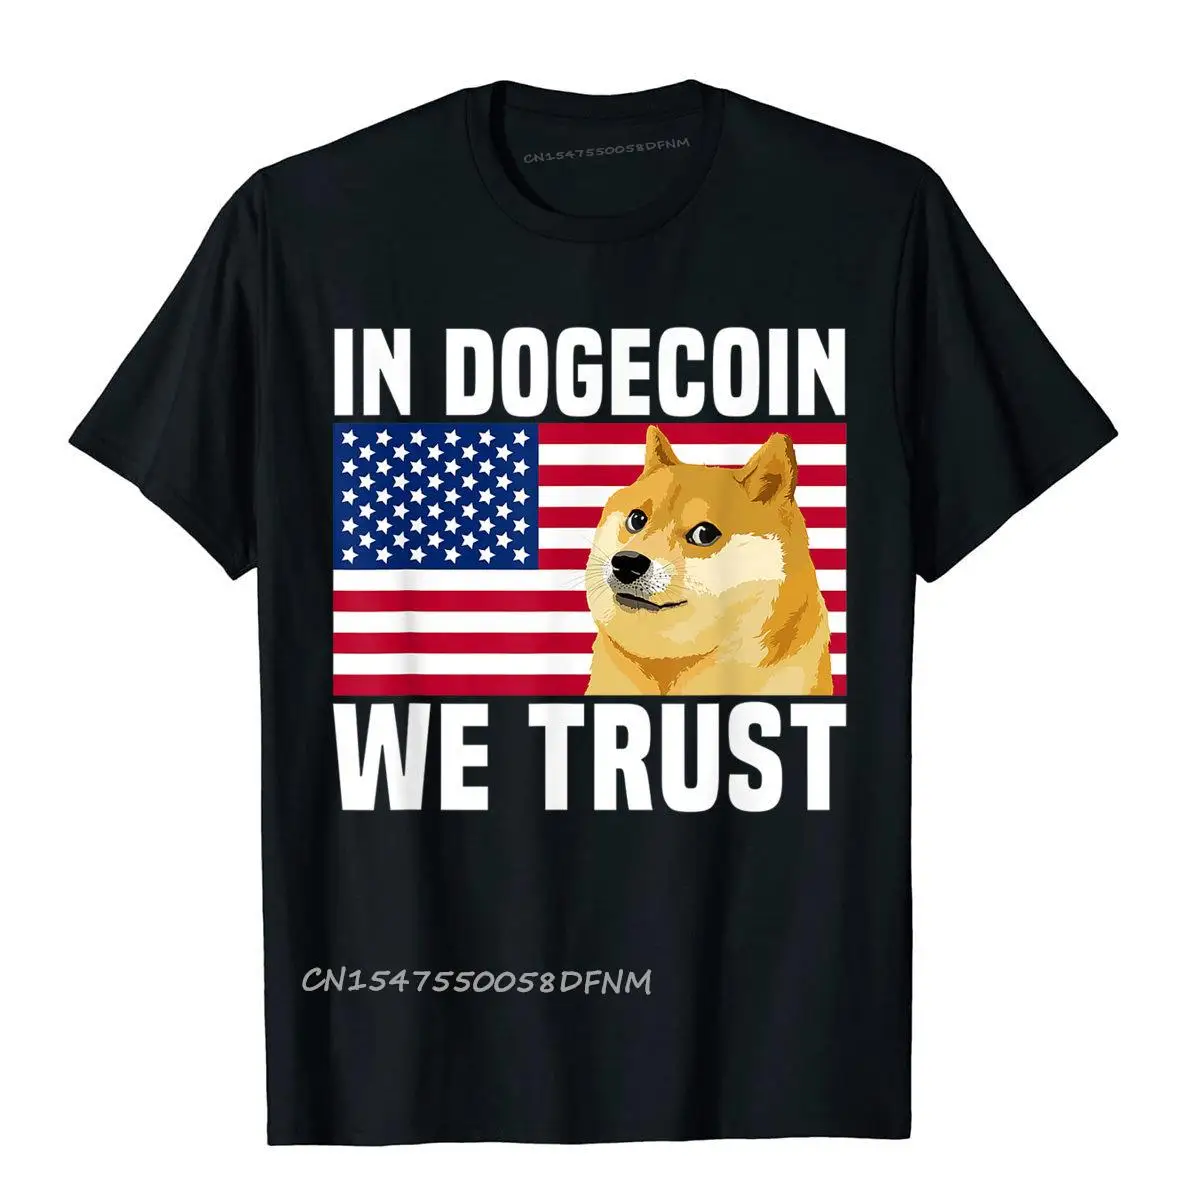 

Персонализированные футболки из хлопка премиум-класса, Мужская футболка Dogecoin в Dogecoin, мы доверяем